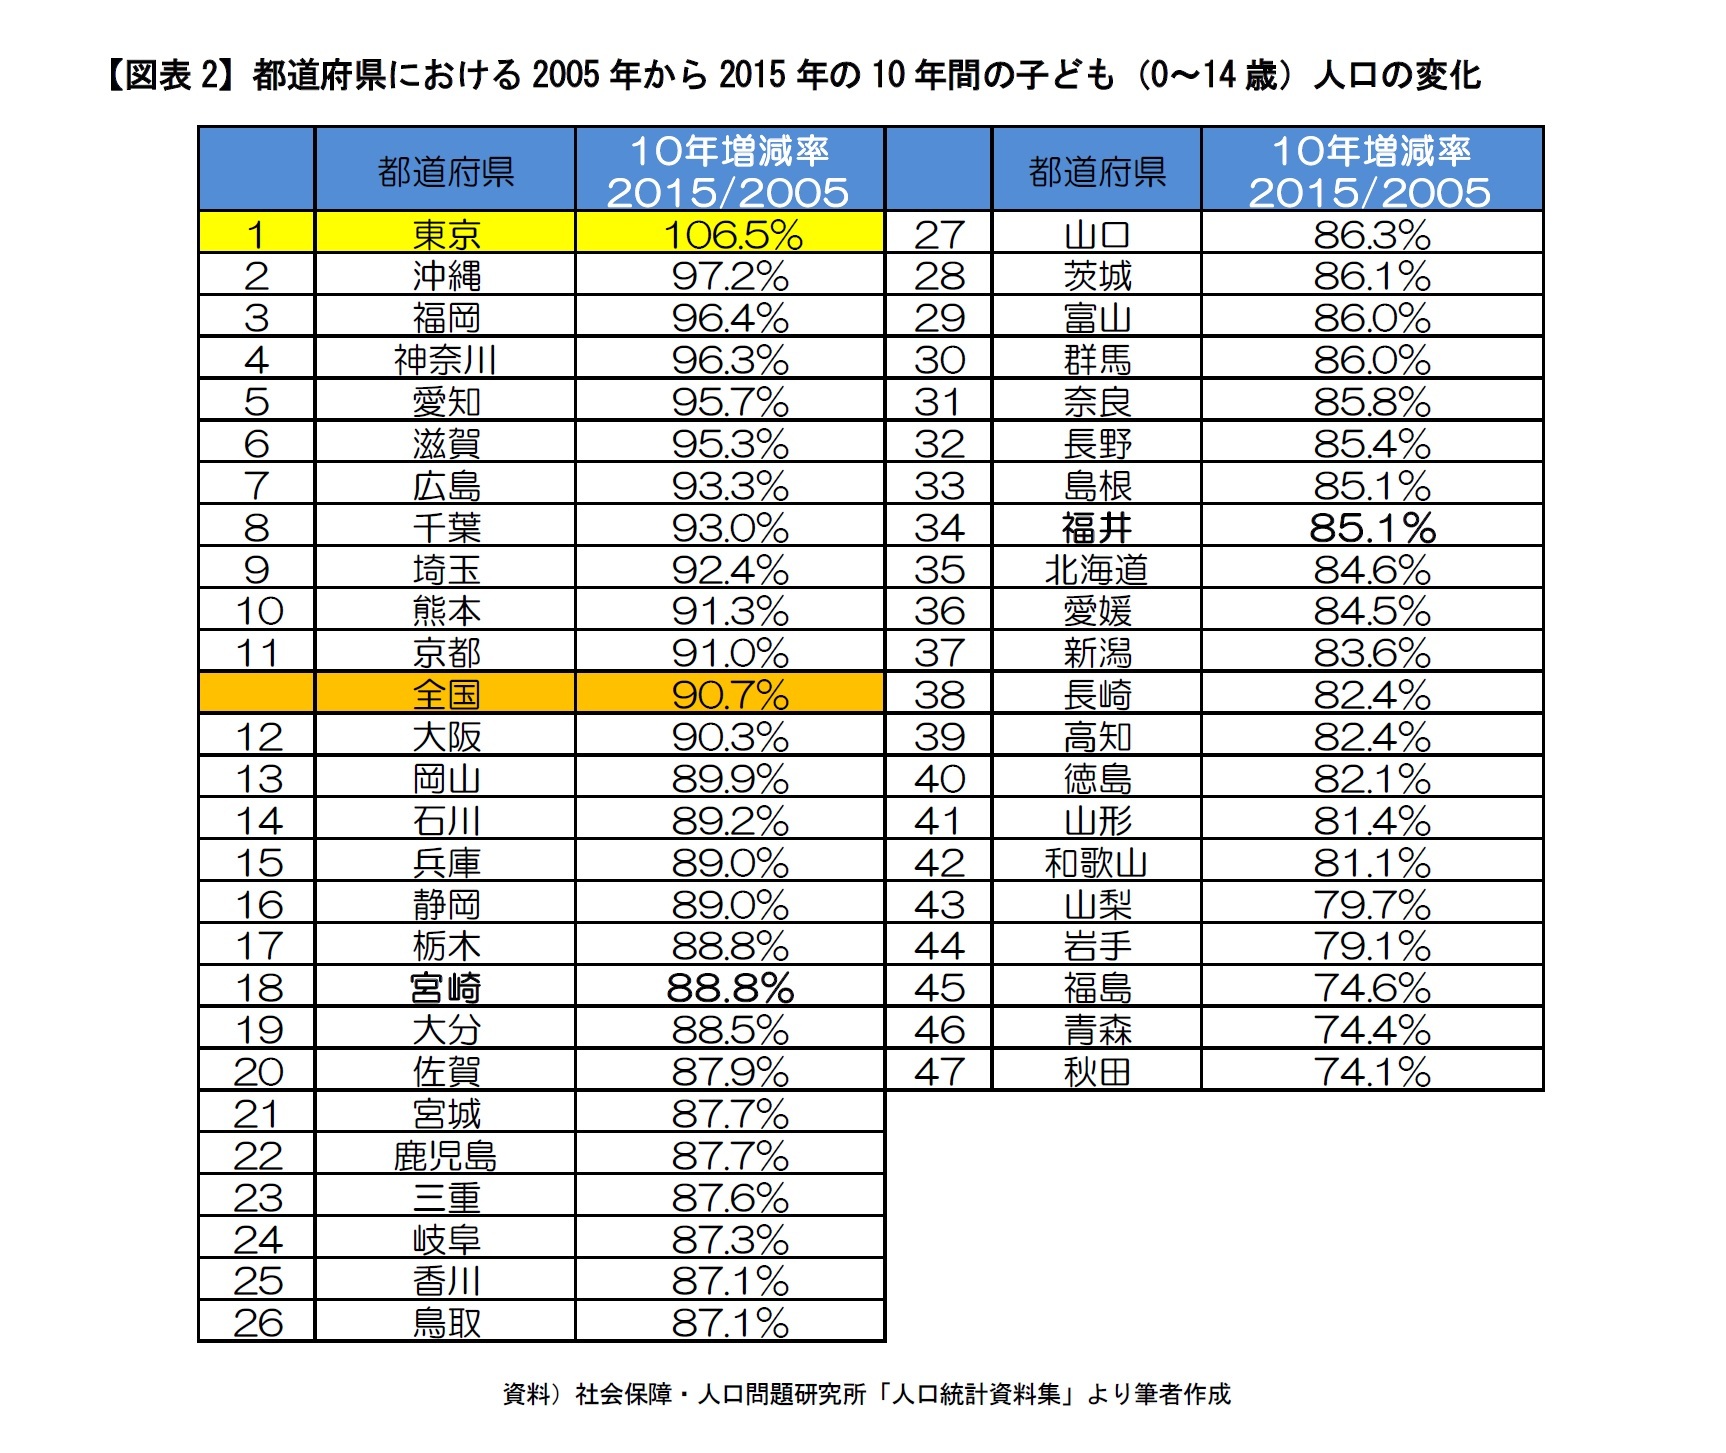 人口減少社会データ解説 なぜ東京都の子ども人口だけが増加するのか 上 10年間エリア子ども人口の増減 都道府県出生率と相関ならず ニッセイ基礎研究所